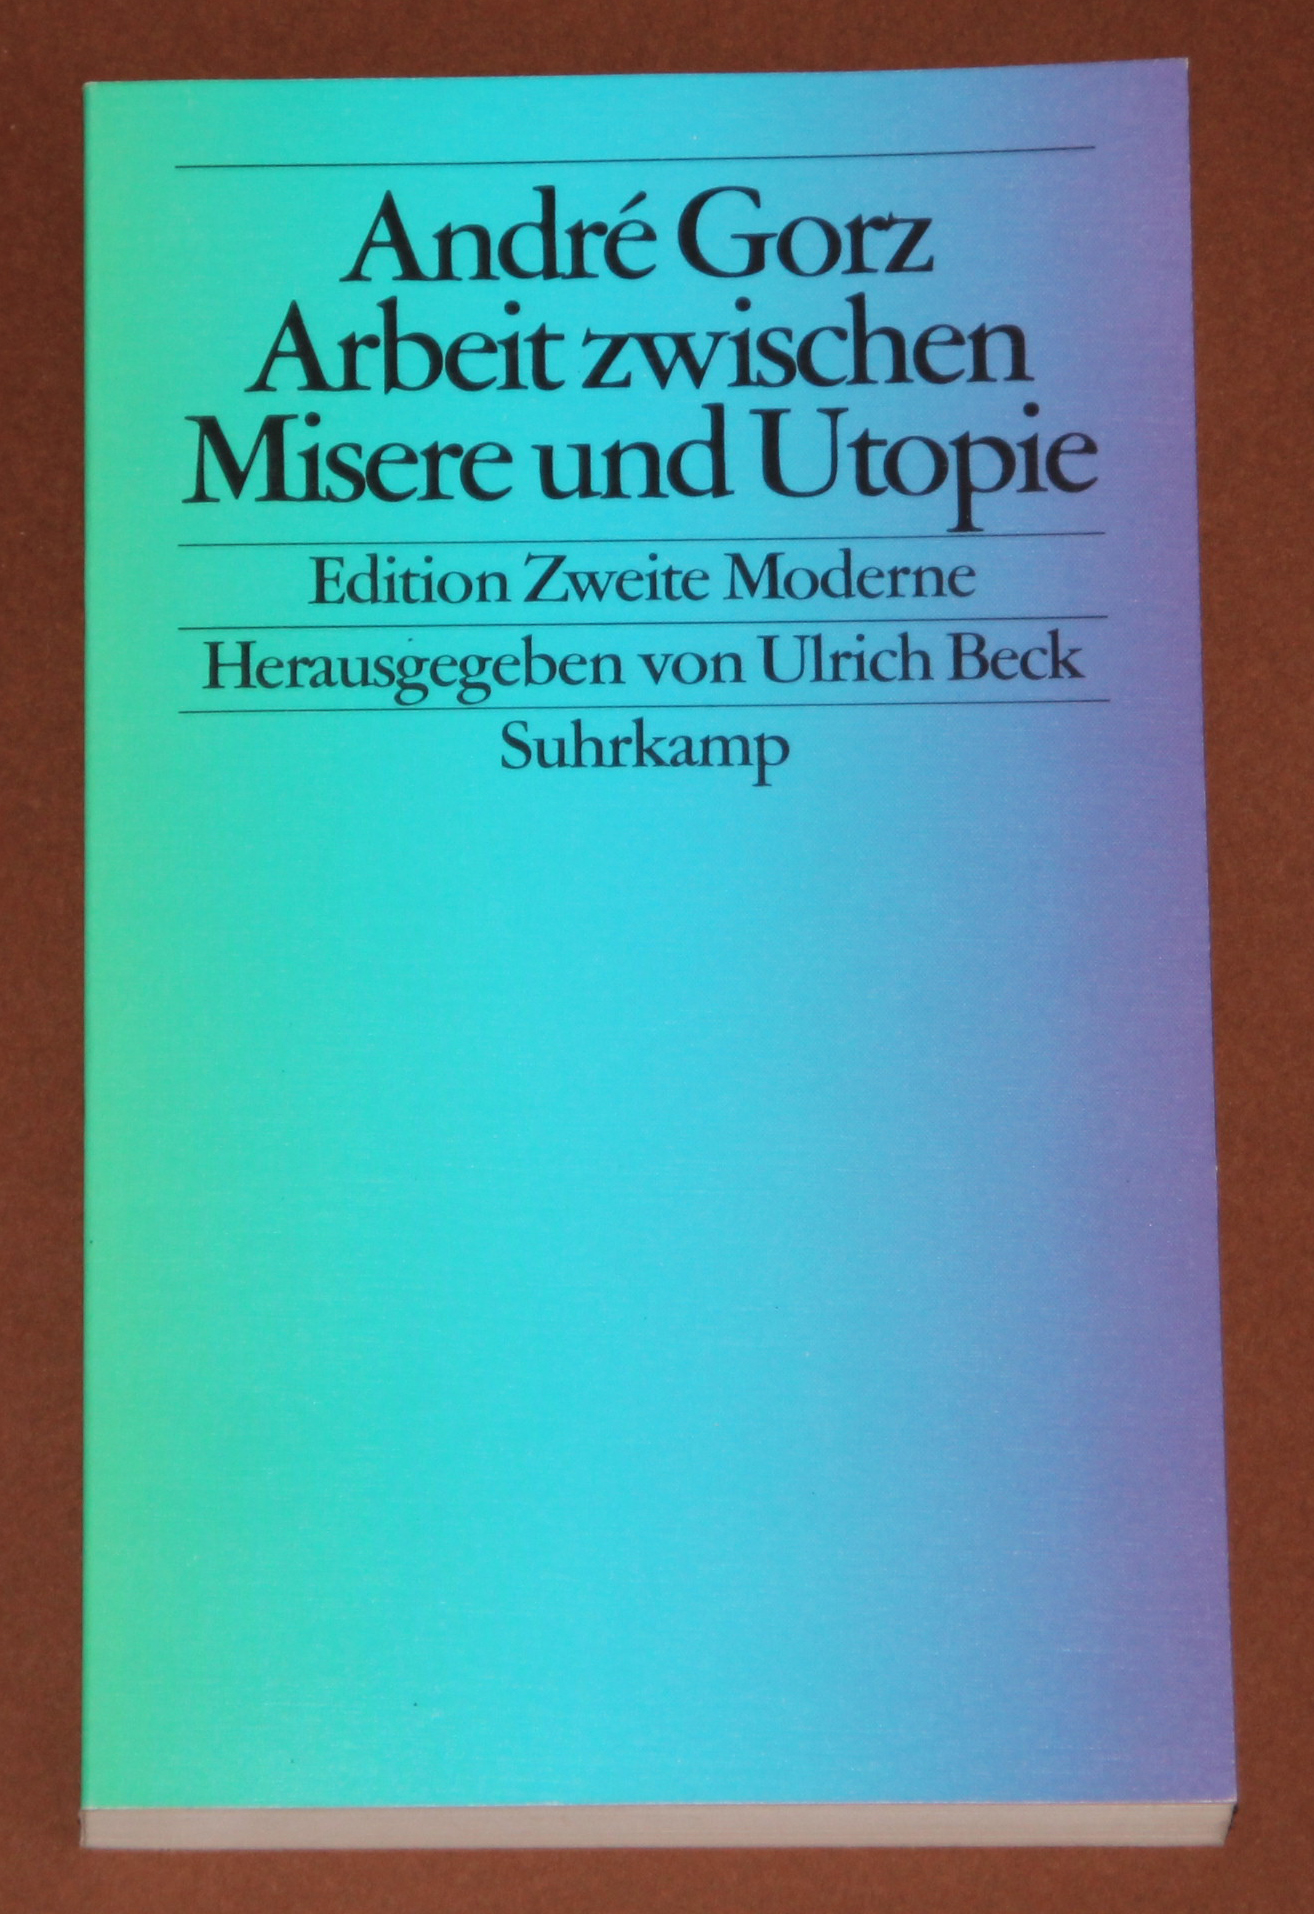 Arbeit zwischen Misere und Utopie. - Edition zweite Moderne - Gorz, Andre